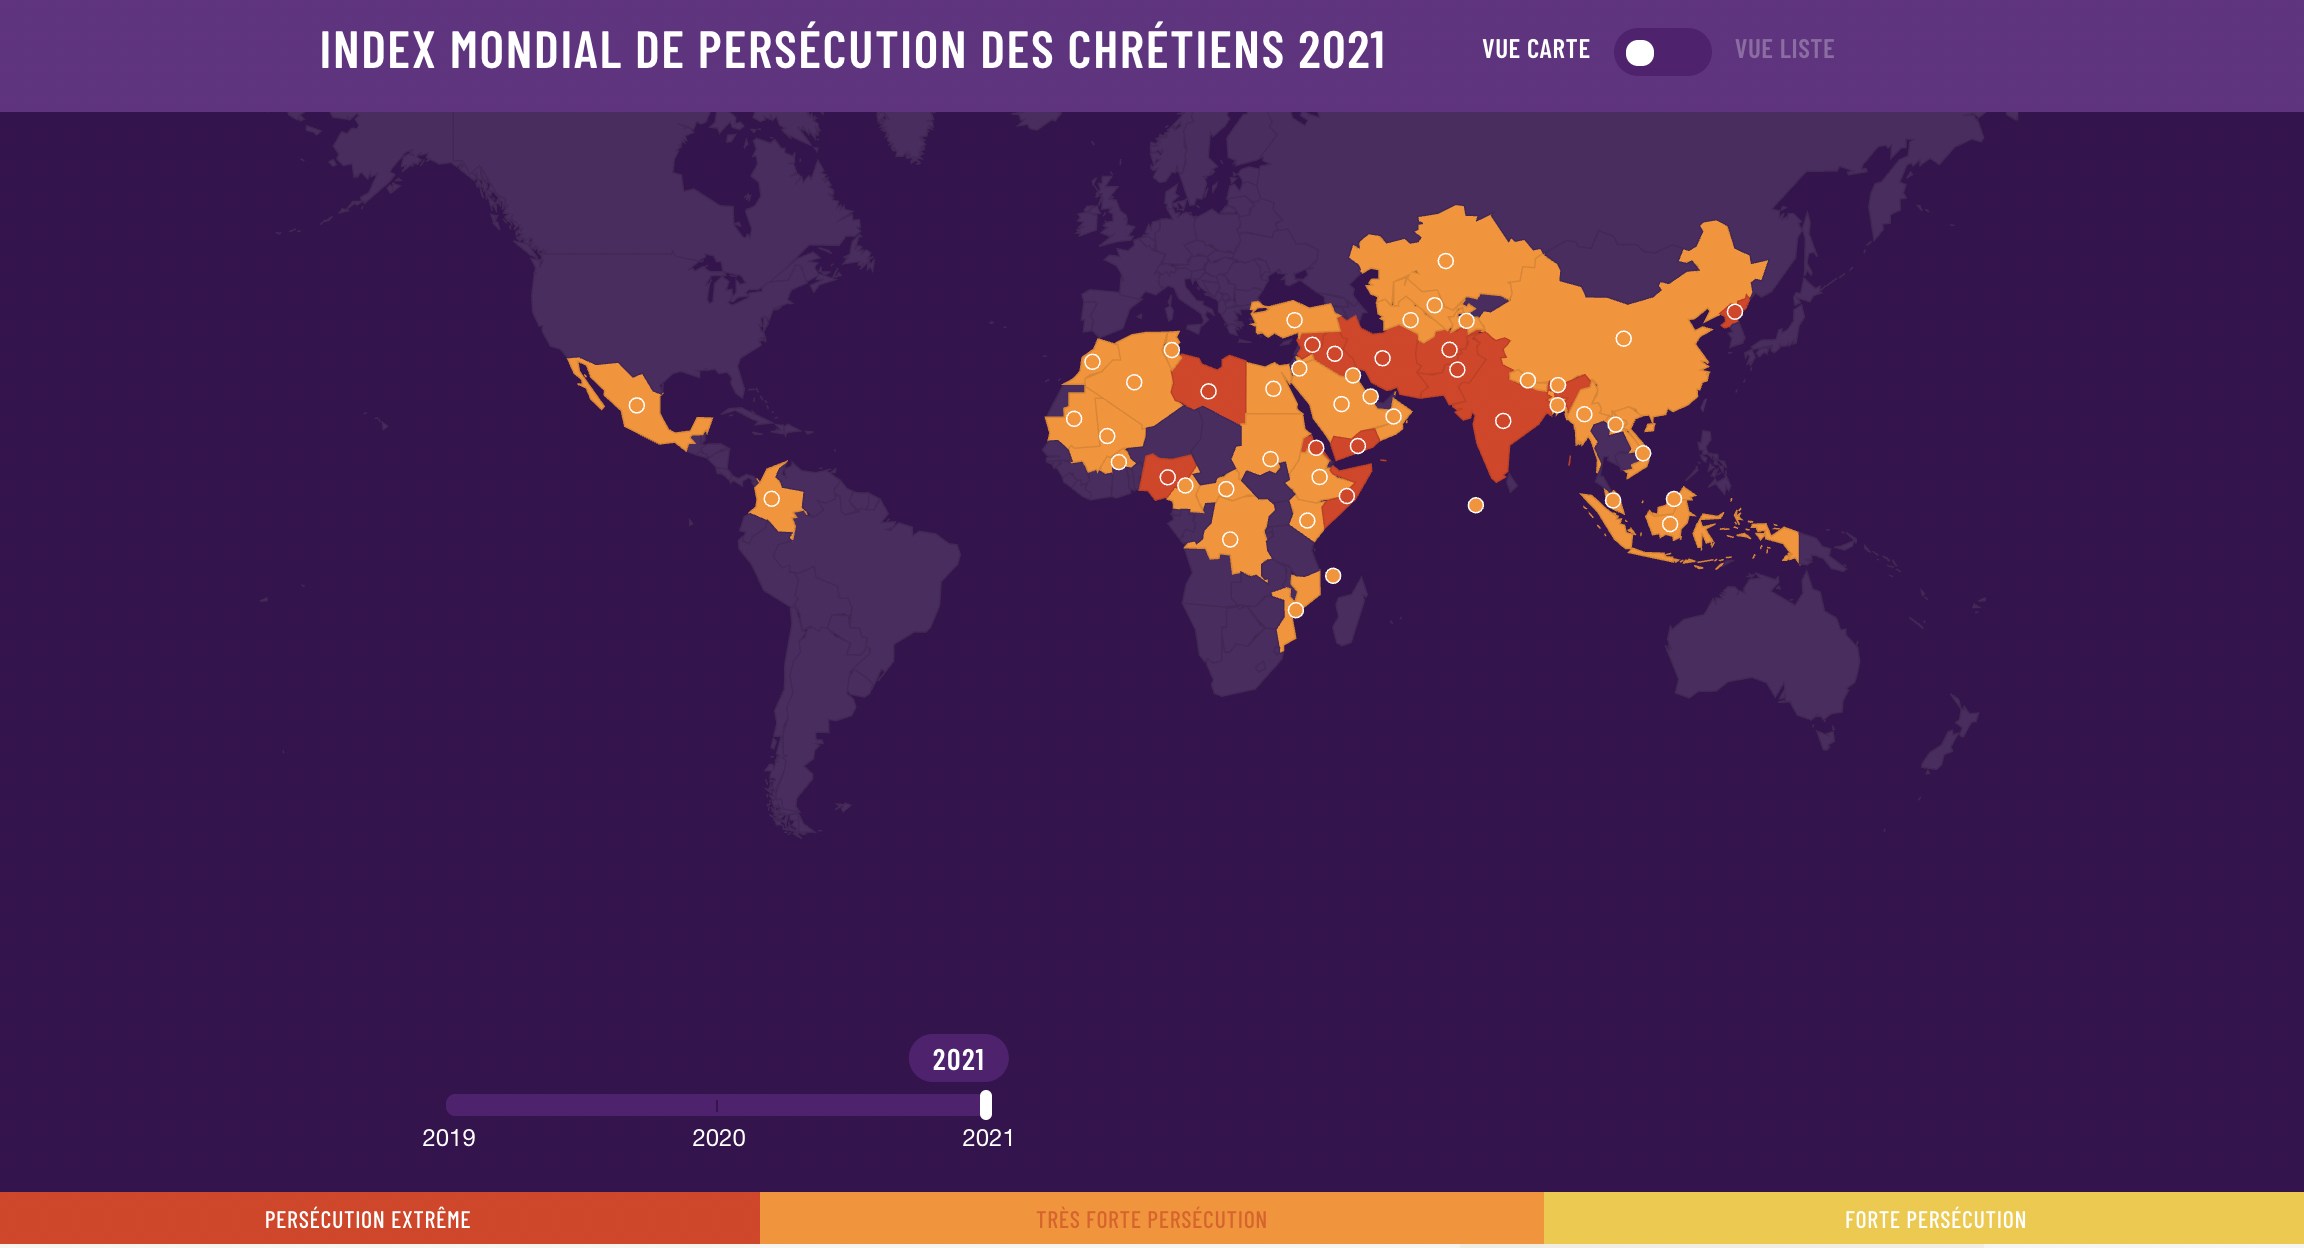 image du globe montrant les pays où la persécution des chrétiens est forte